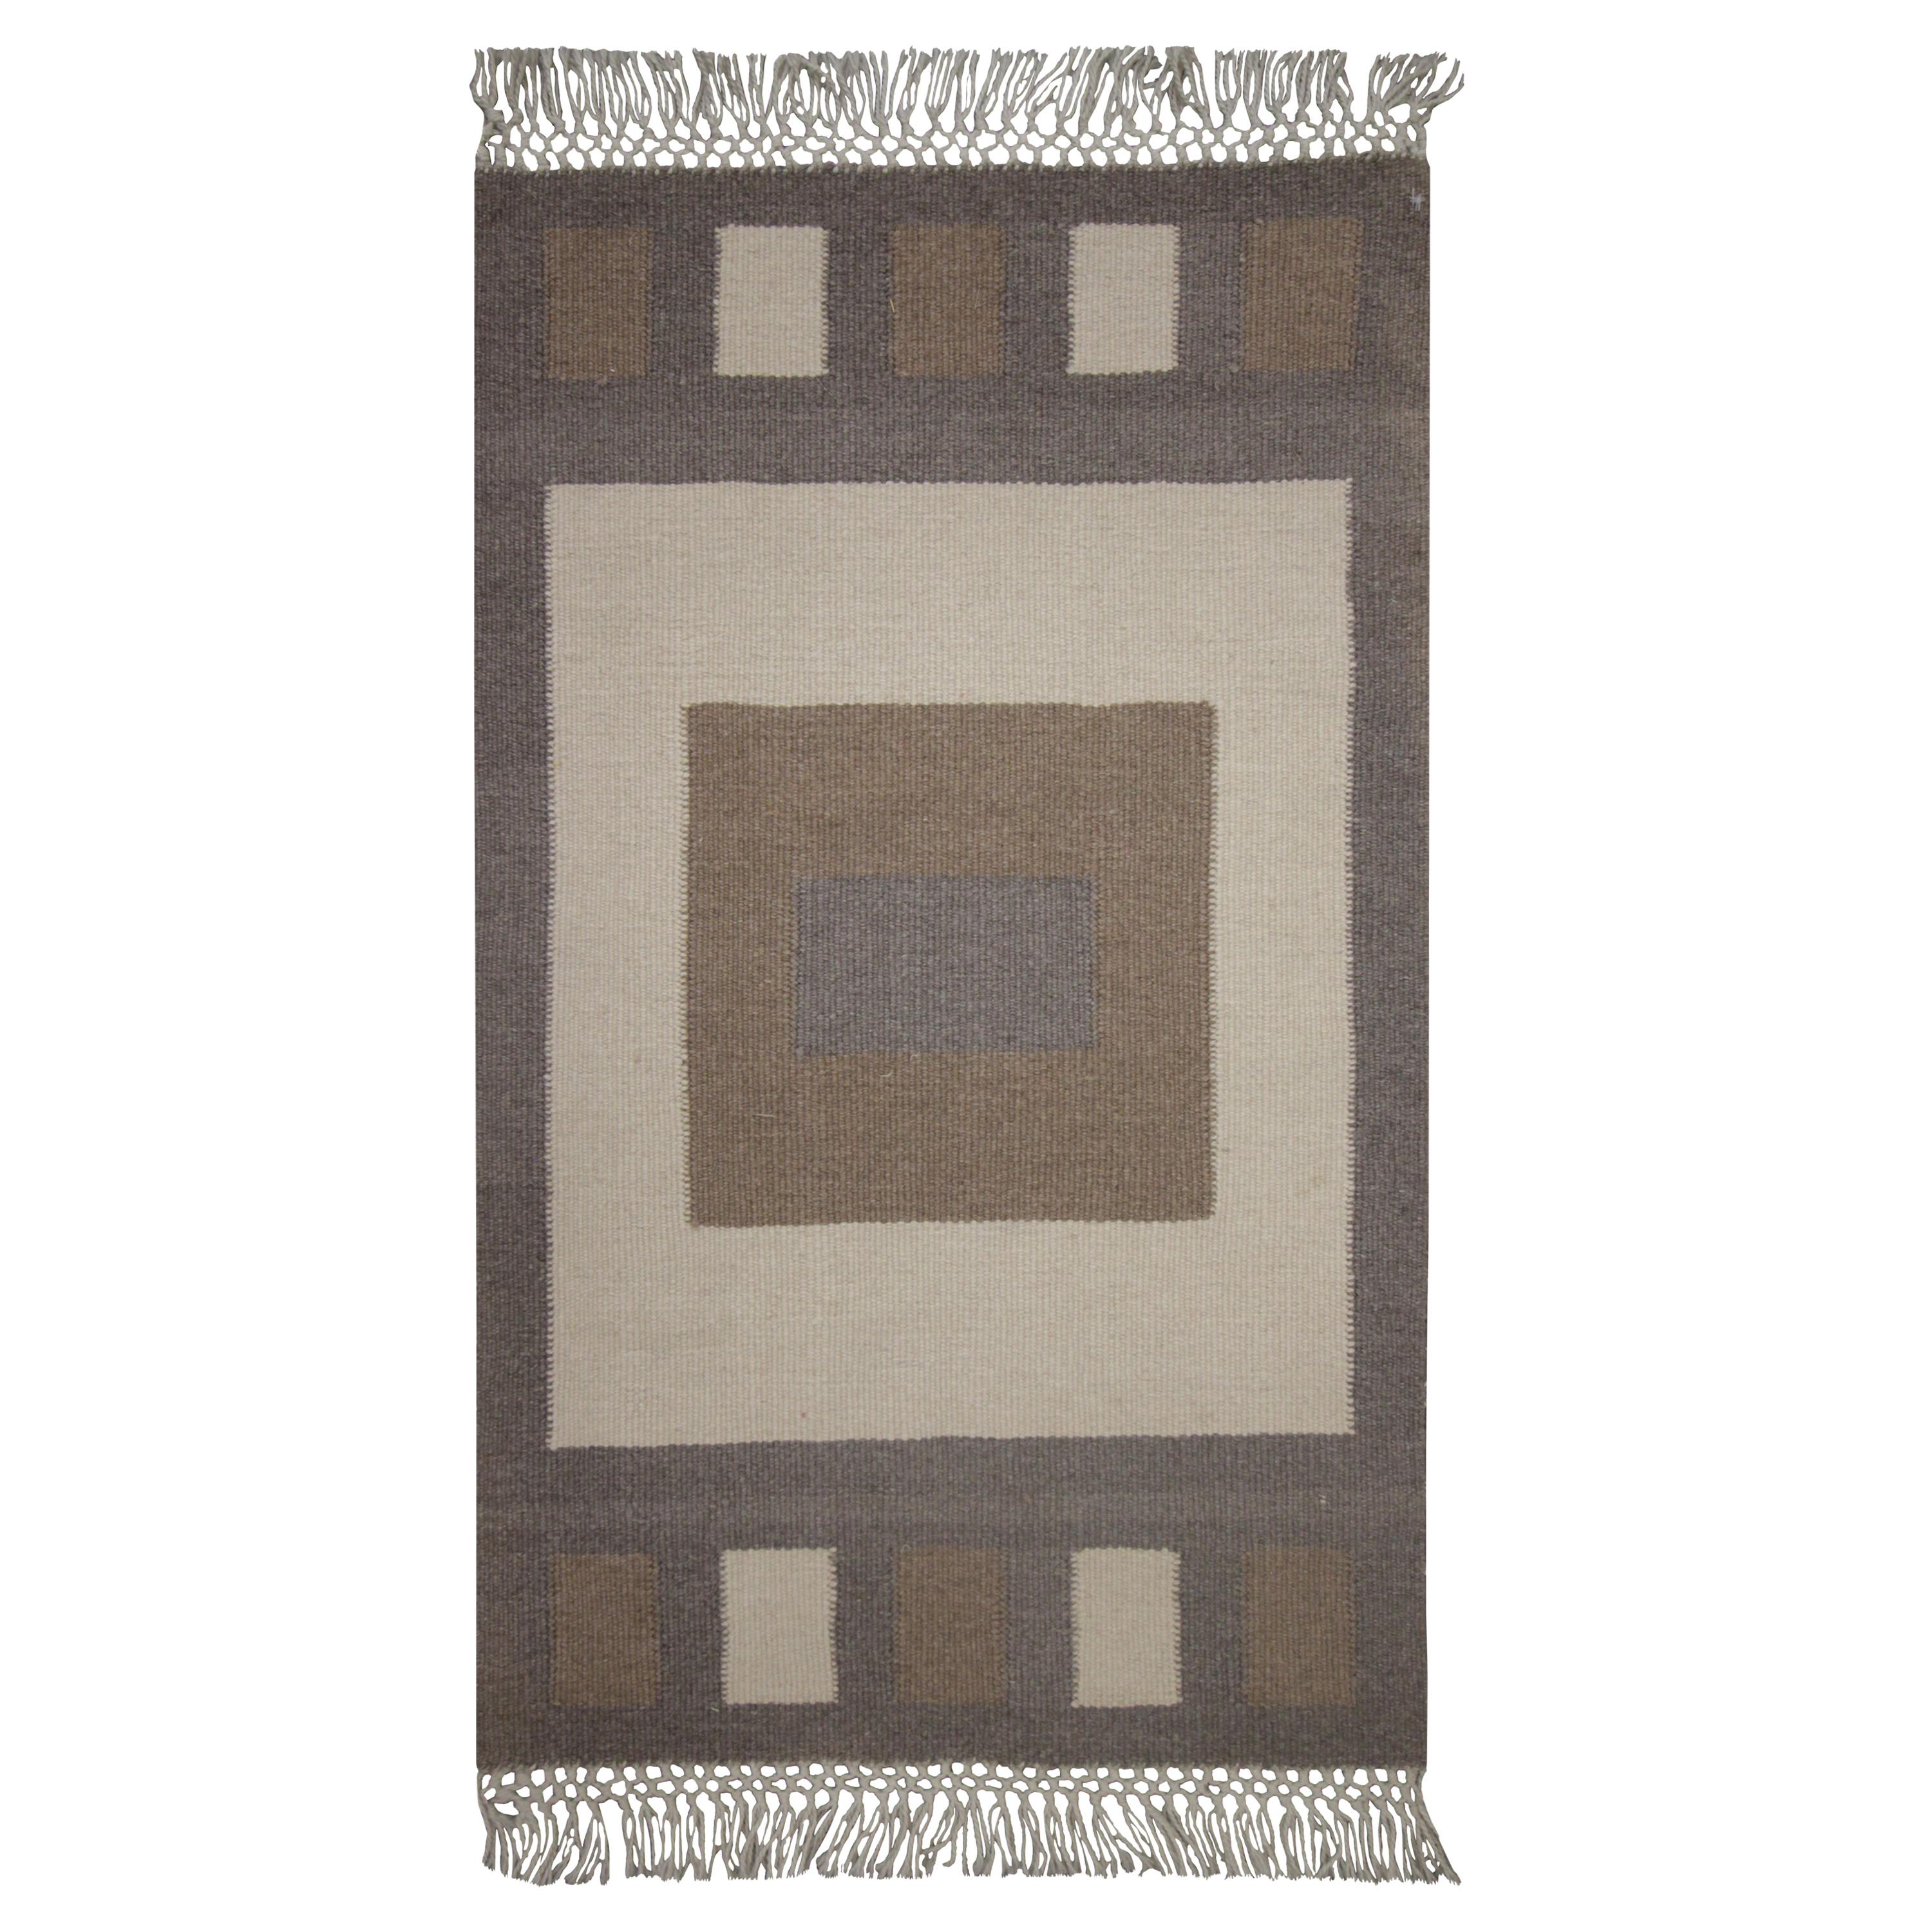 Moderner handgefertigter grau-beigefarbener Teppich aus Wolle mit geometrischem Muster